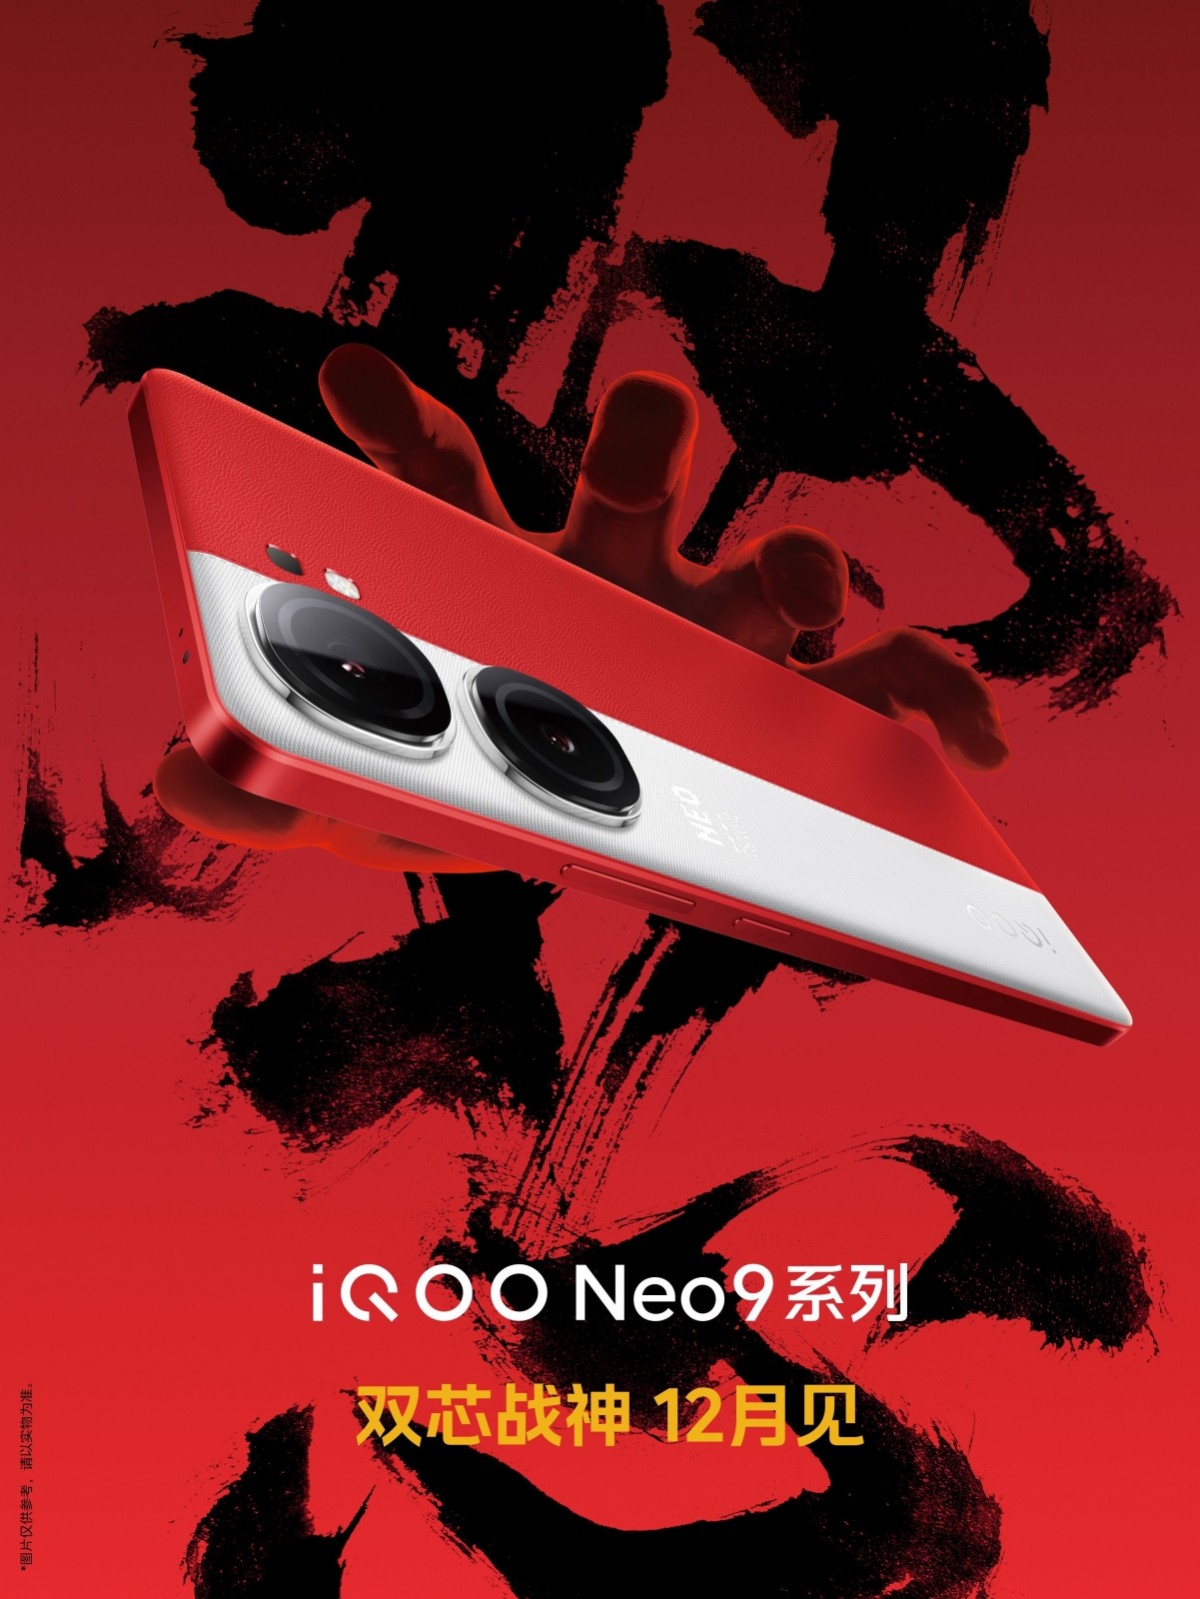 سيصل iQOO Neo9 في ديسمبر بتصميم ثنائي اللون